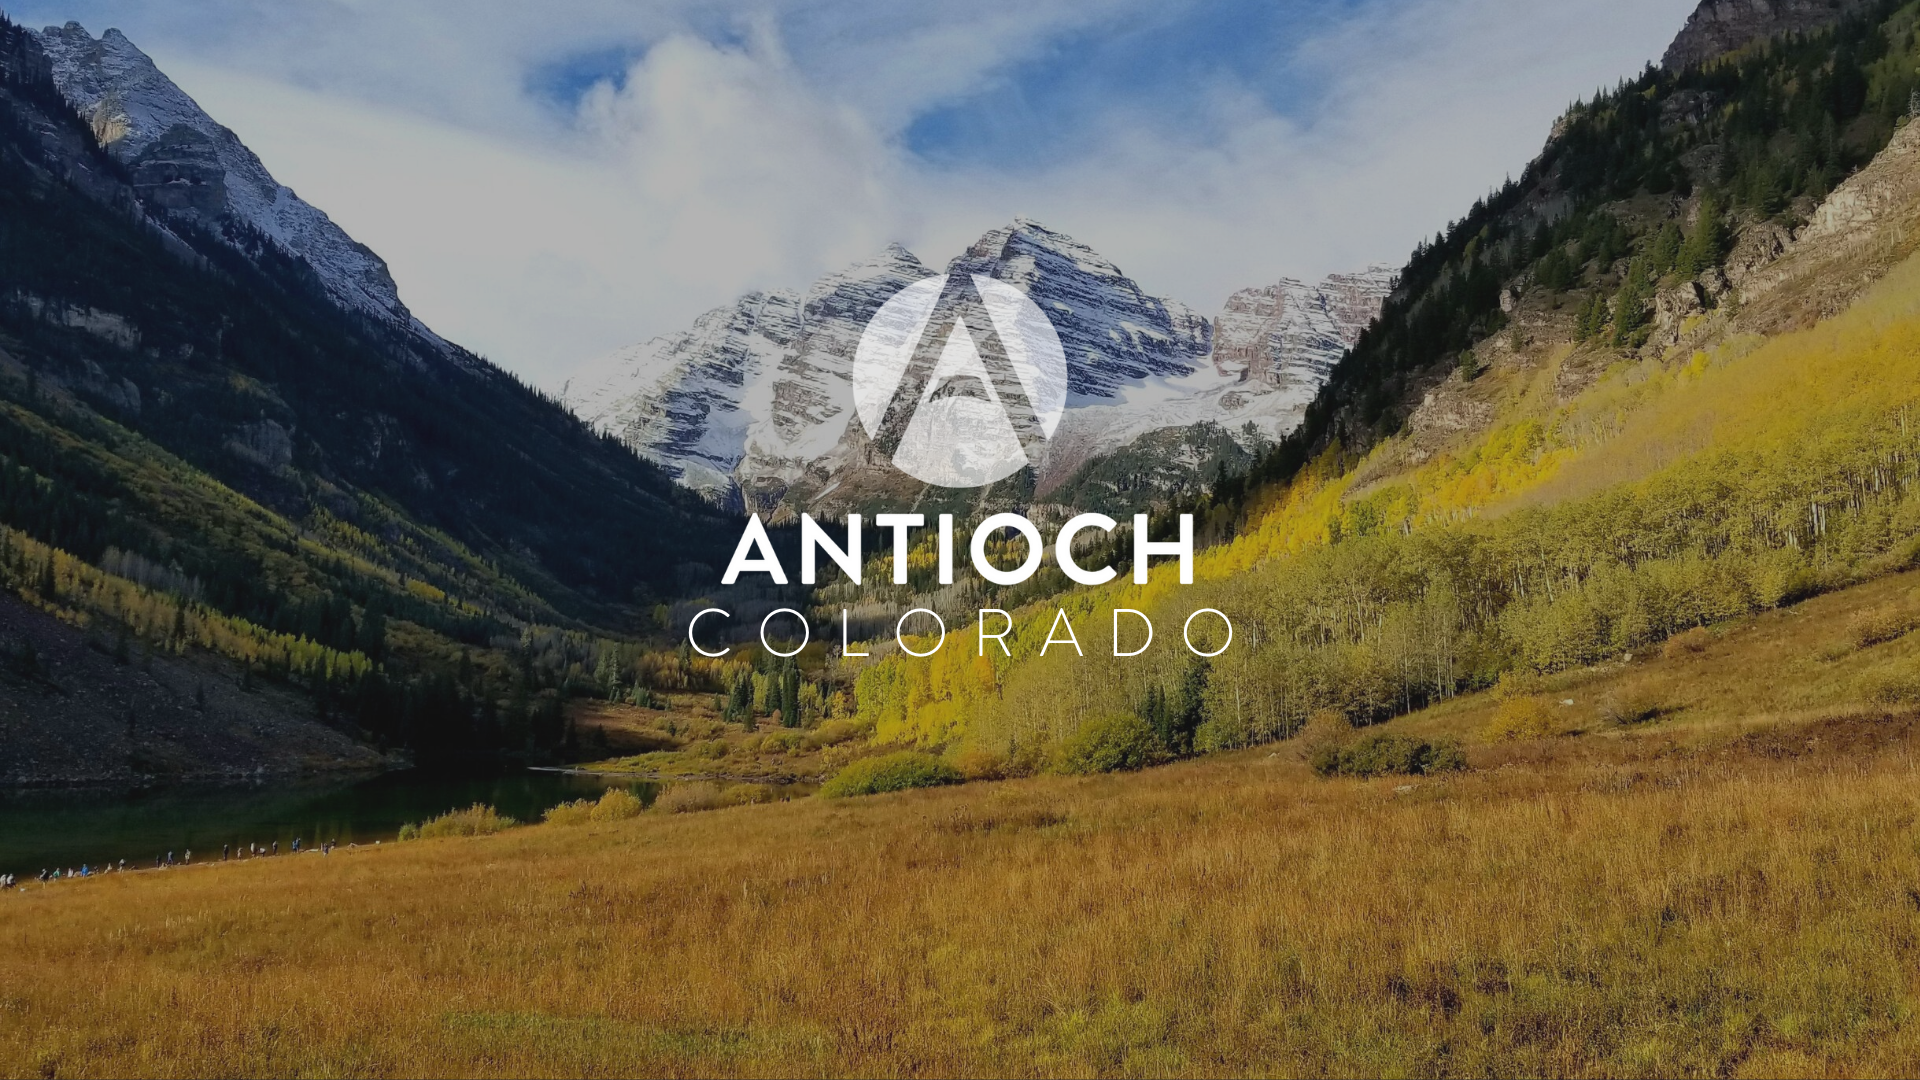 Antioch Colorado